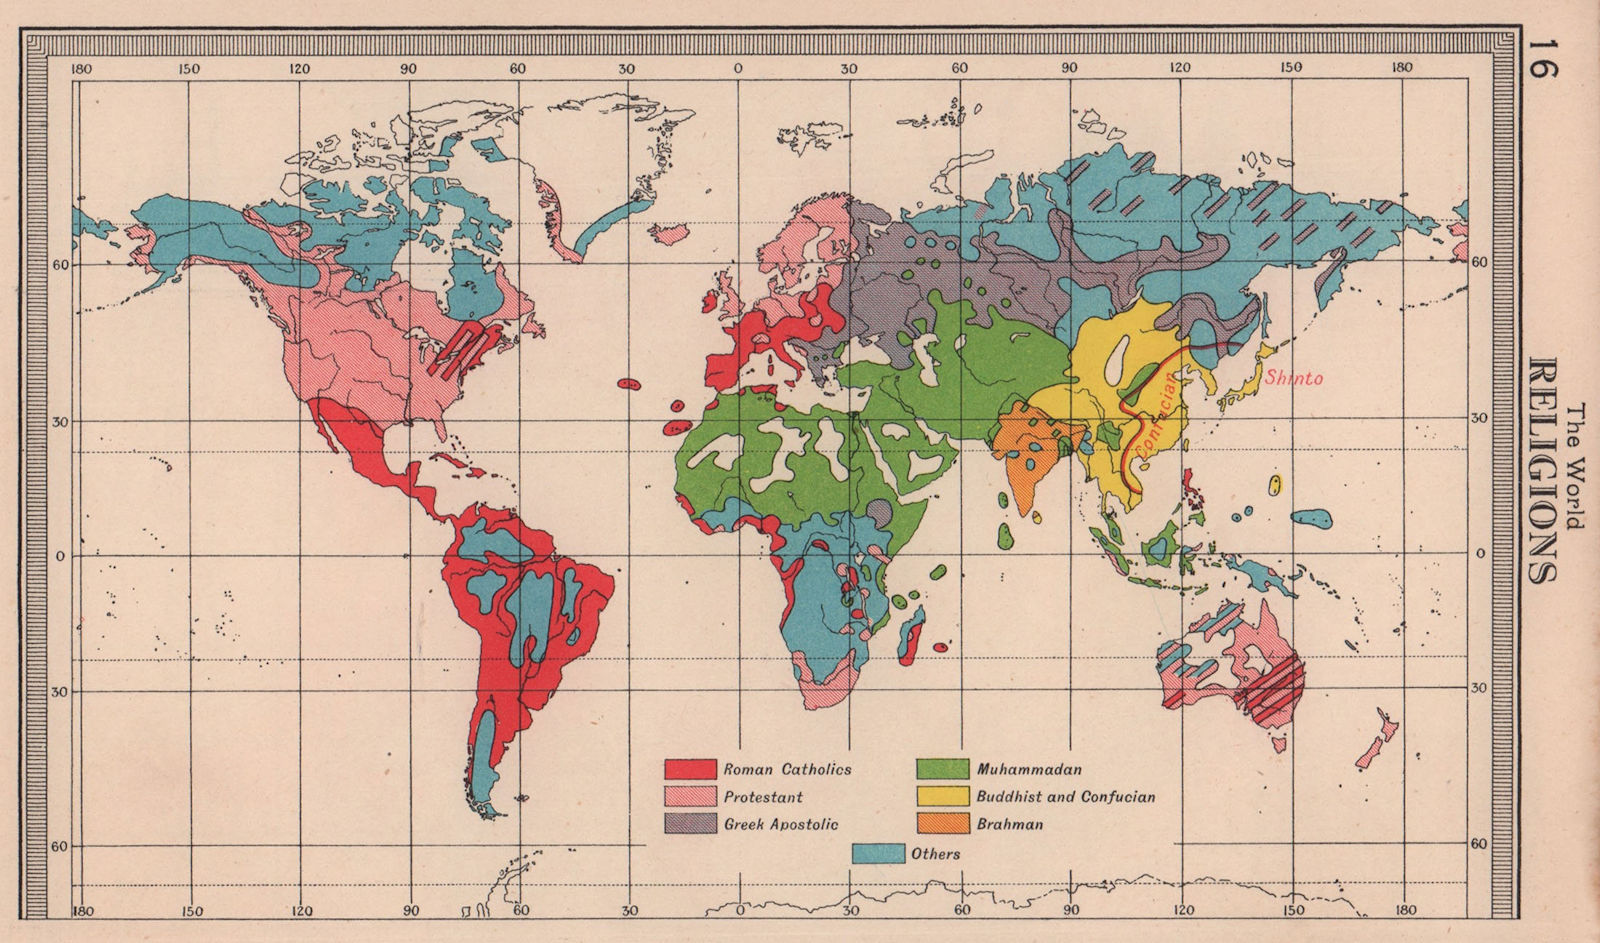 World - Religions. Christian Hindu Muslim Buddhist. BARTHOLOMEW 1949 old map